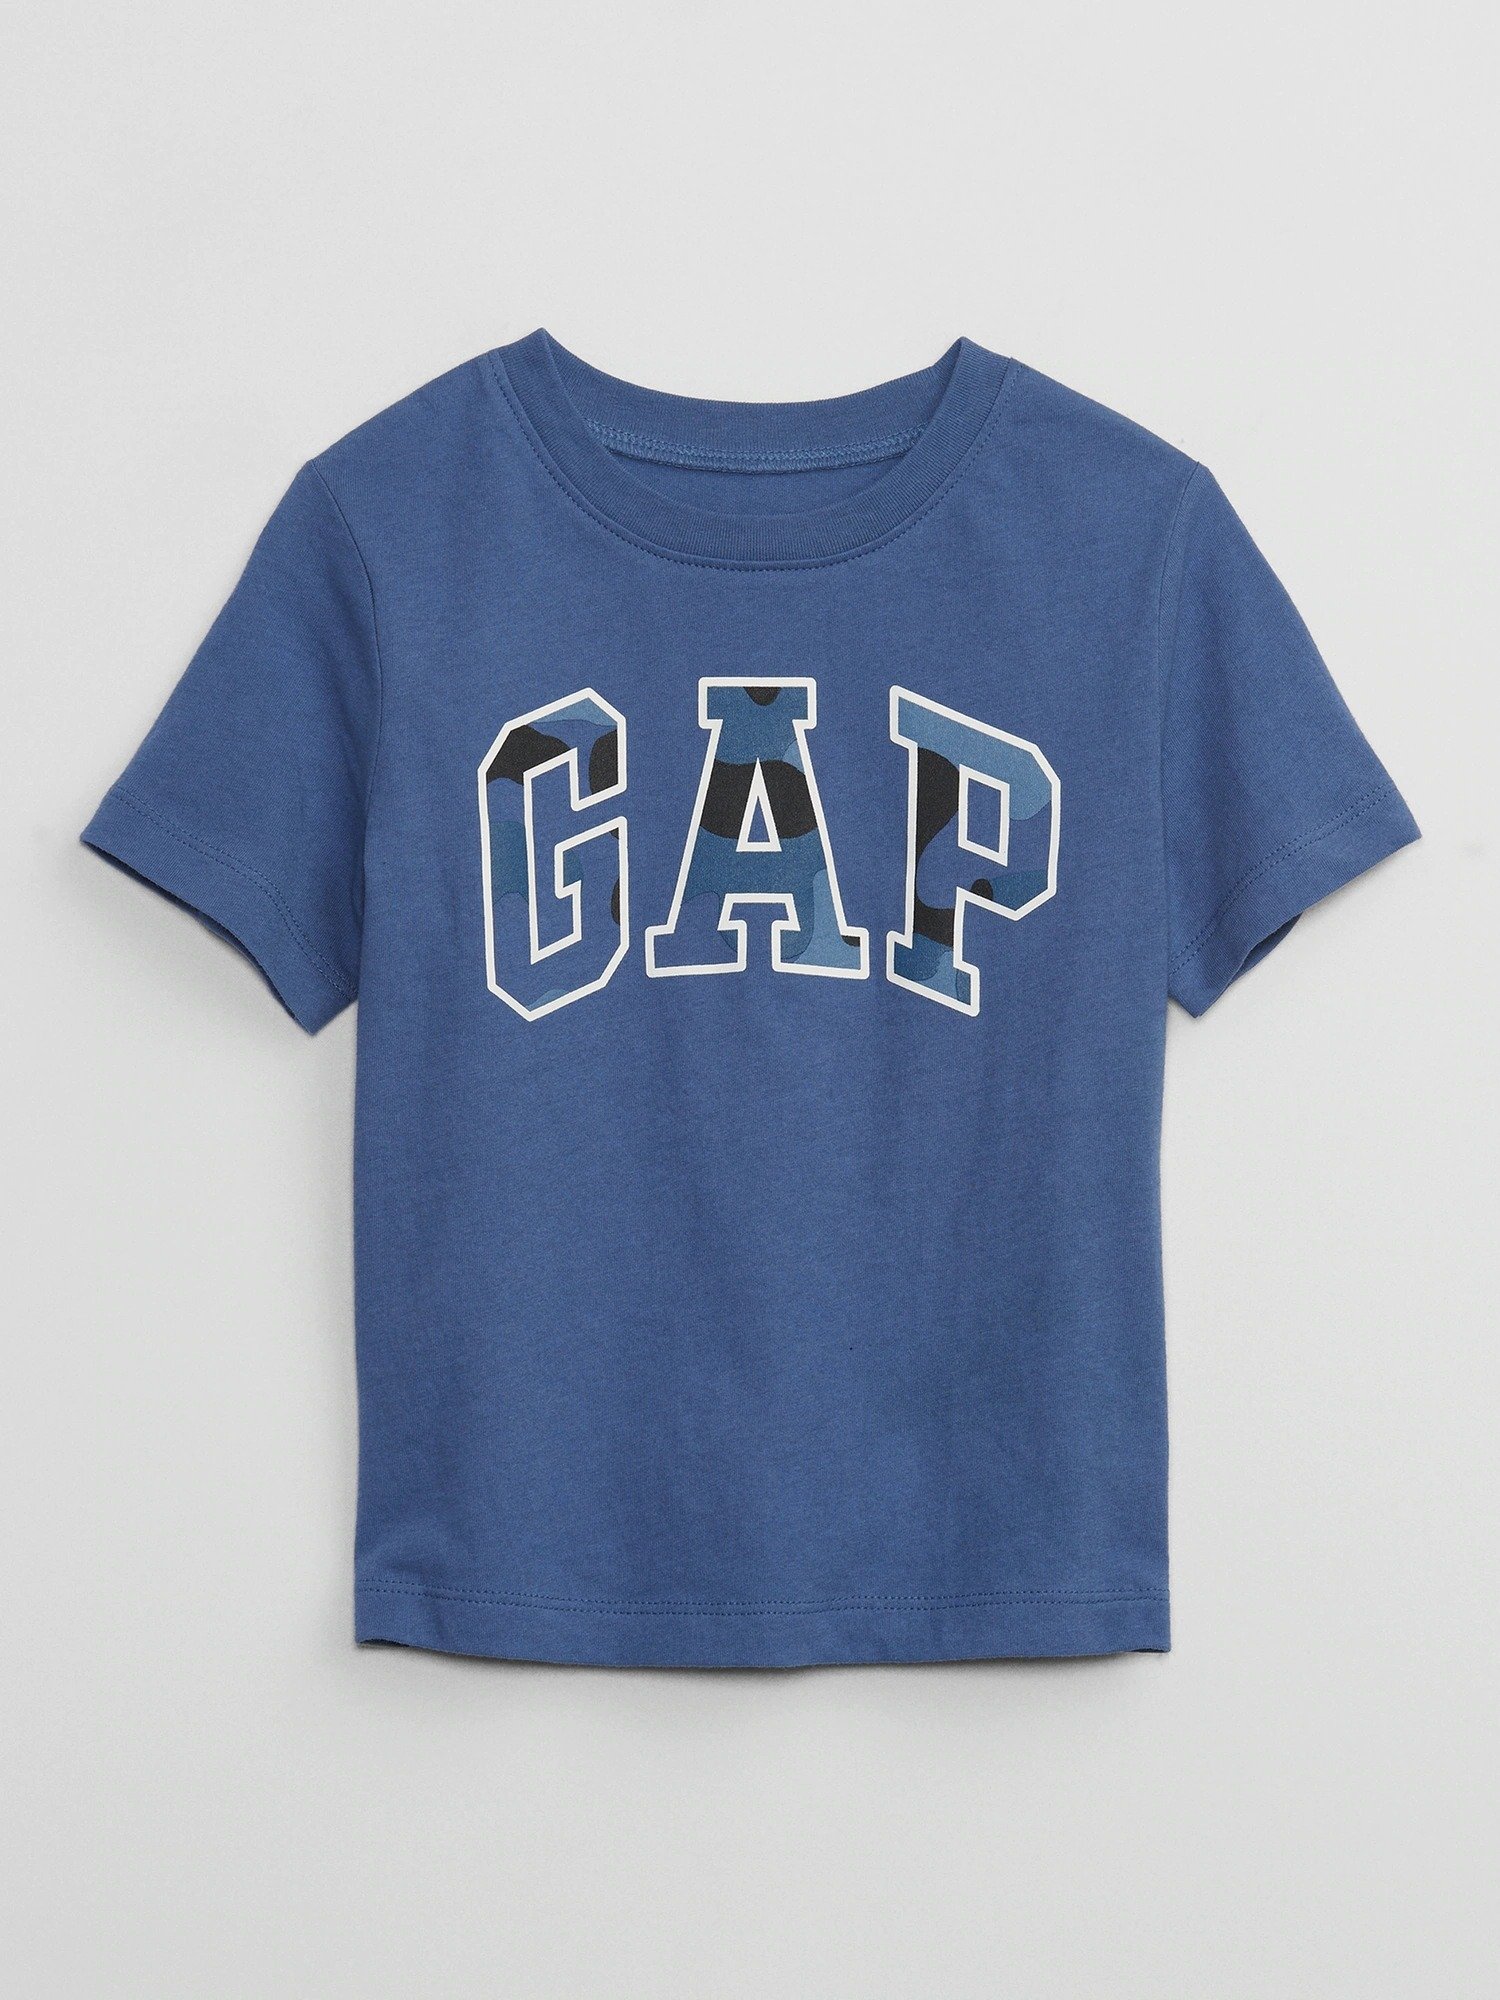 Gap Logo Kısa Kollu T-Shirt product image